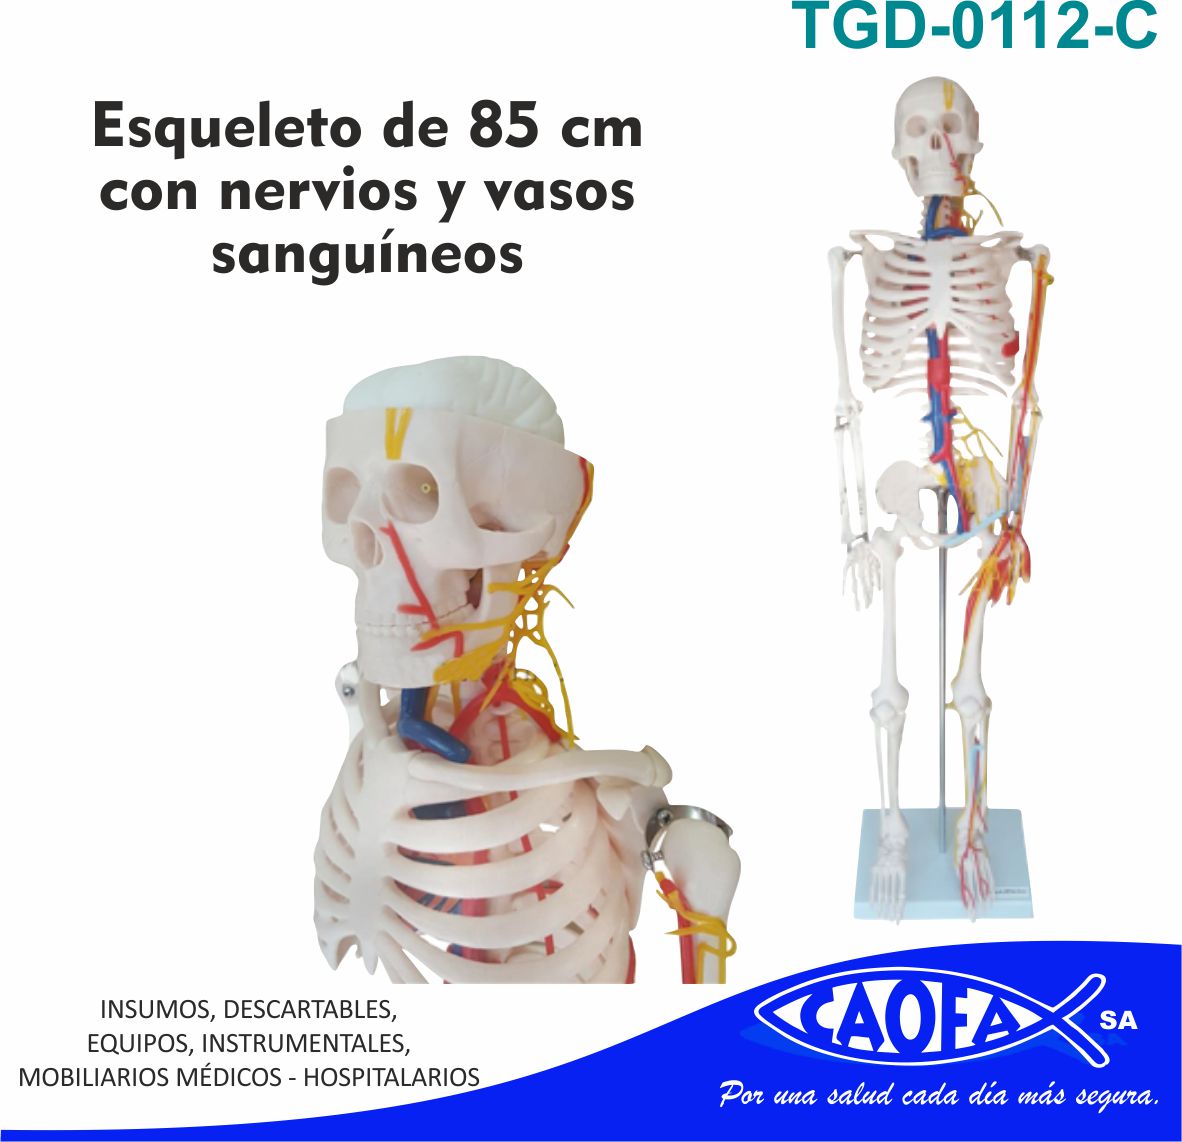 Esqueleto de 85 cm Esqueleto